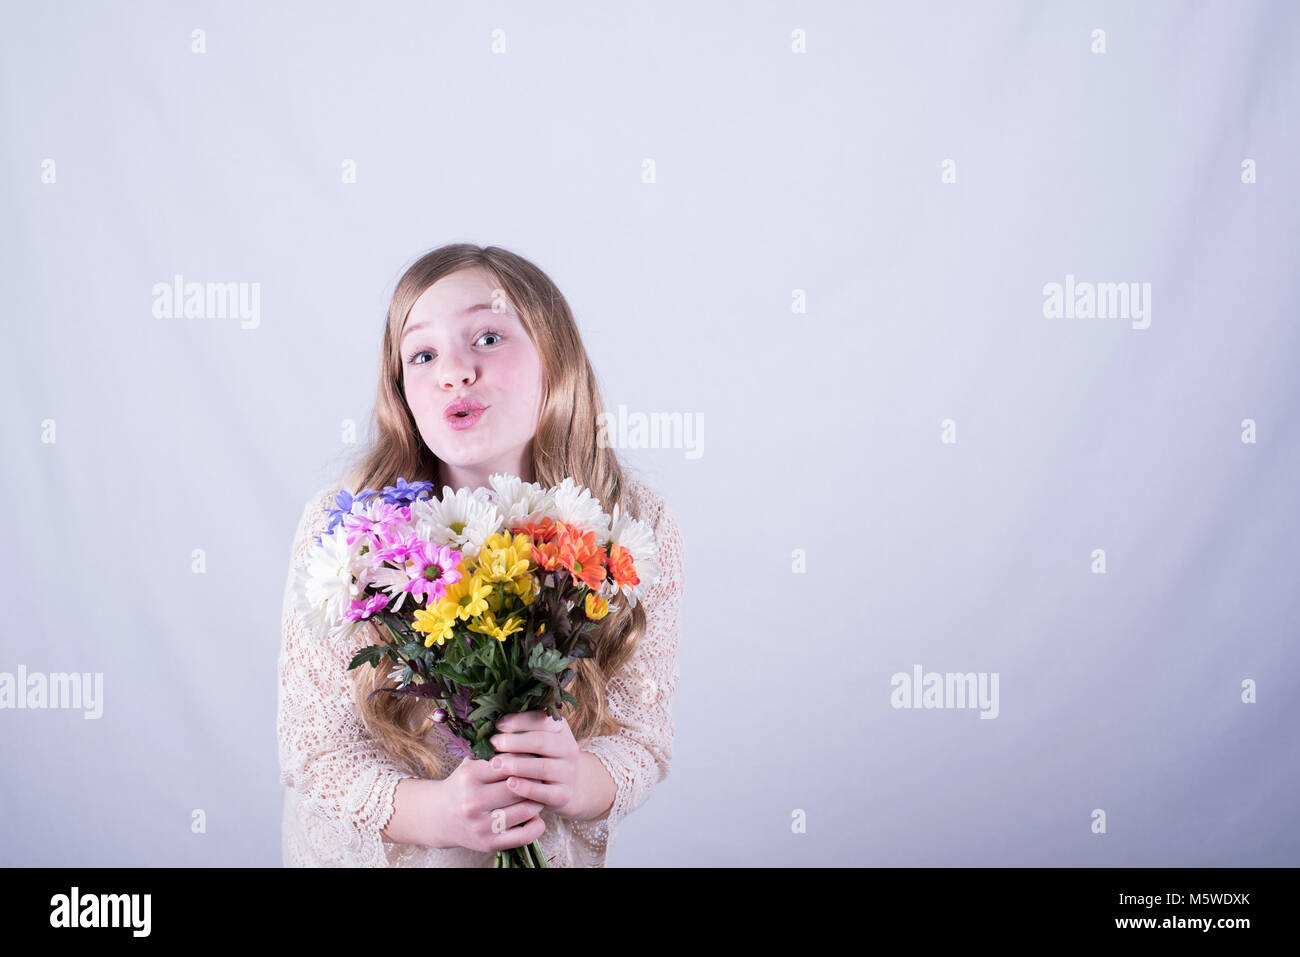 12-year-old girl con largo pelo rubio sucio celebración colorido bouquet de margaritas con mirada de admiración contra el fondo blanco. Foto de stock